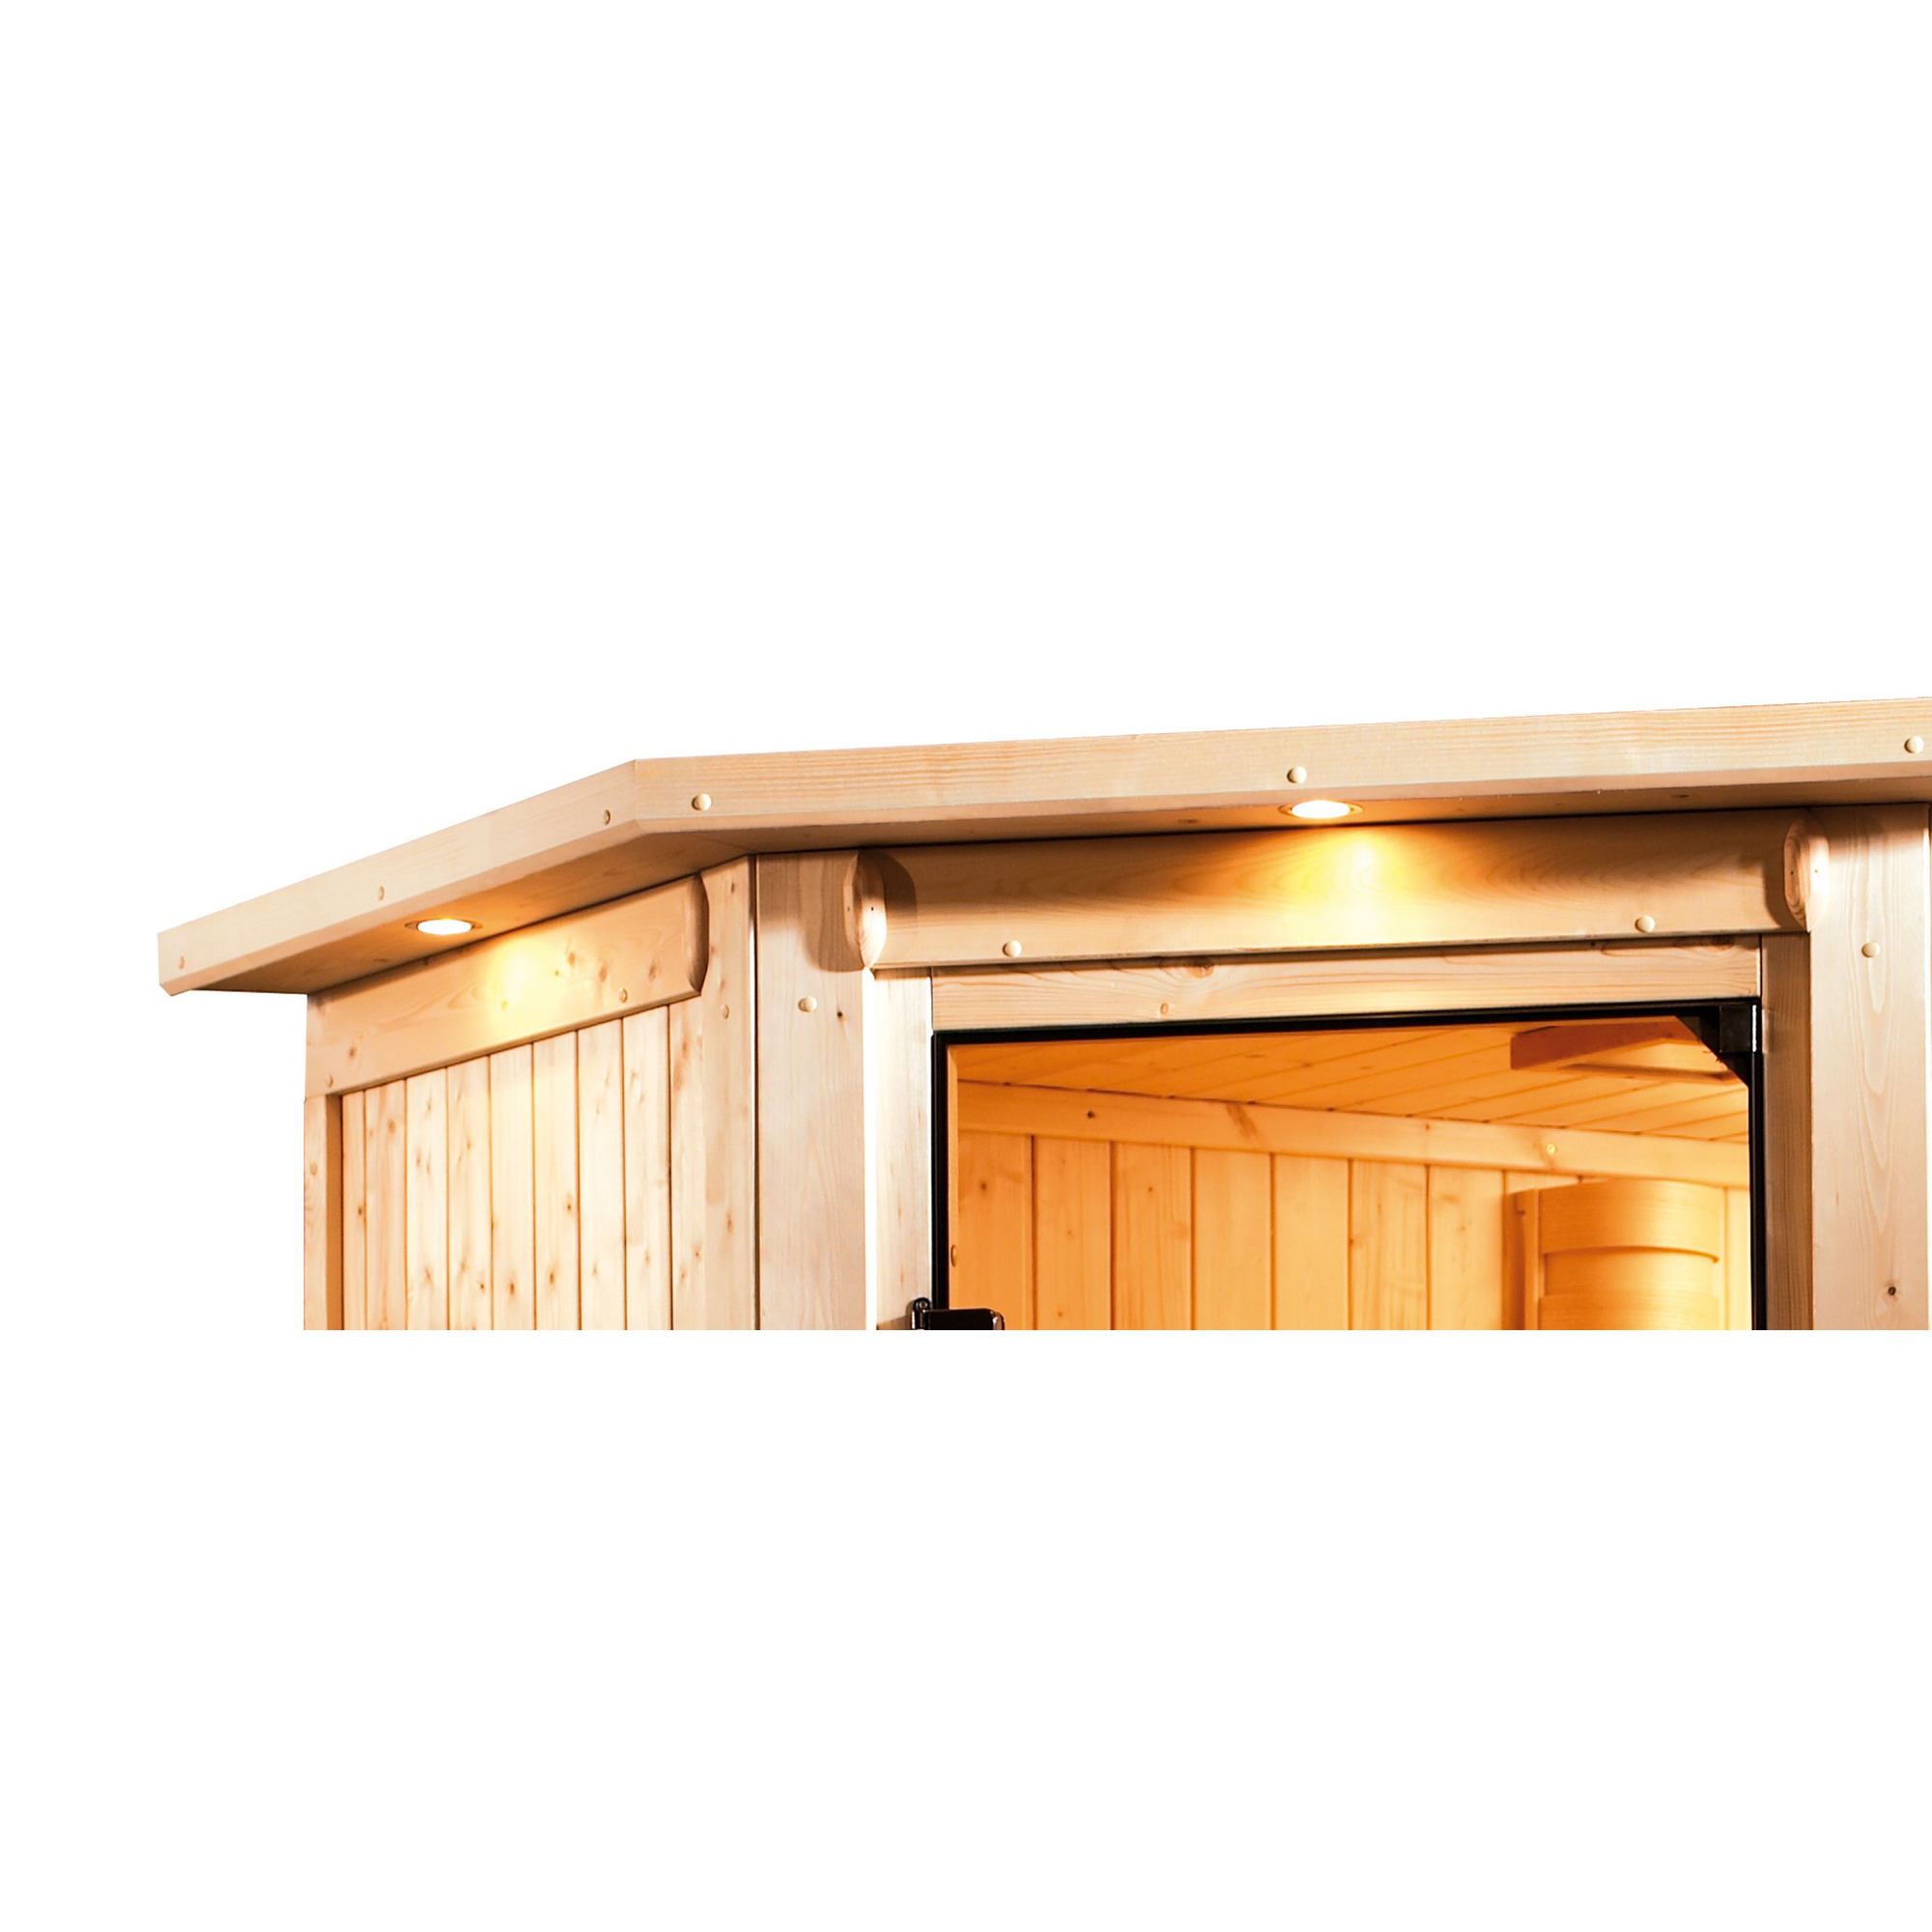 Massivholzsauna 'Julieta' naturbelassen mit Kranz und bronzierter Tür 9 kW Ofen externe Steuerung modern 224 x 184 x 202 cm + product picture